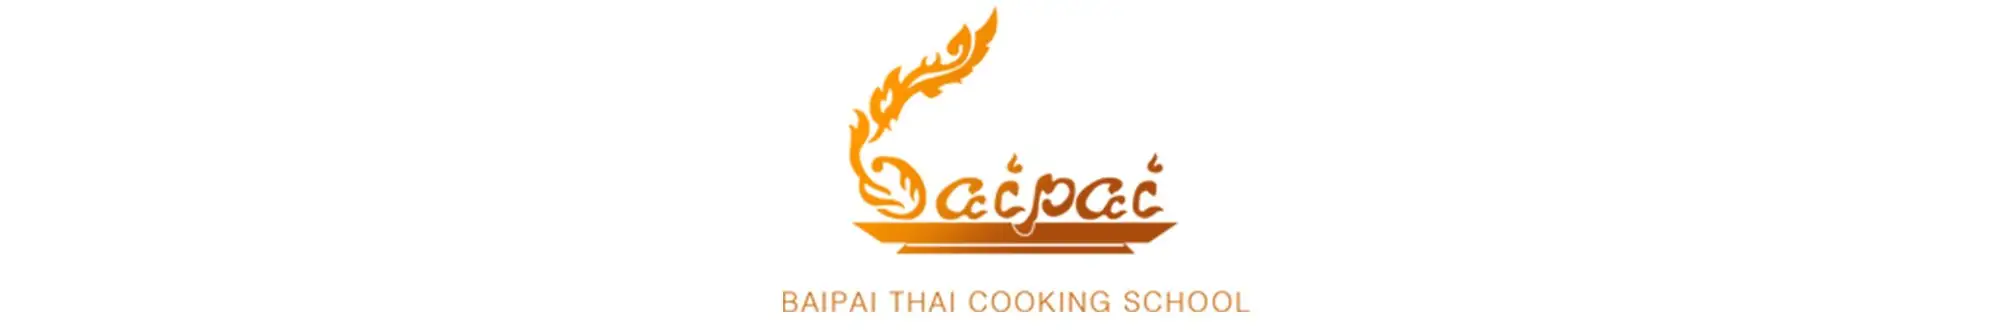 logo baipai thai cooking school 